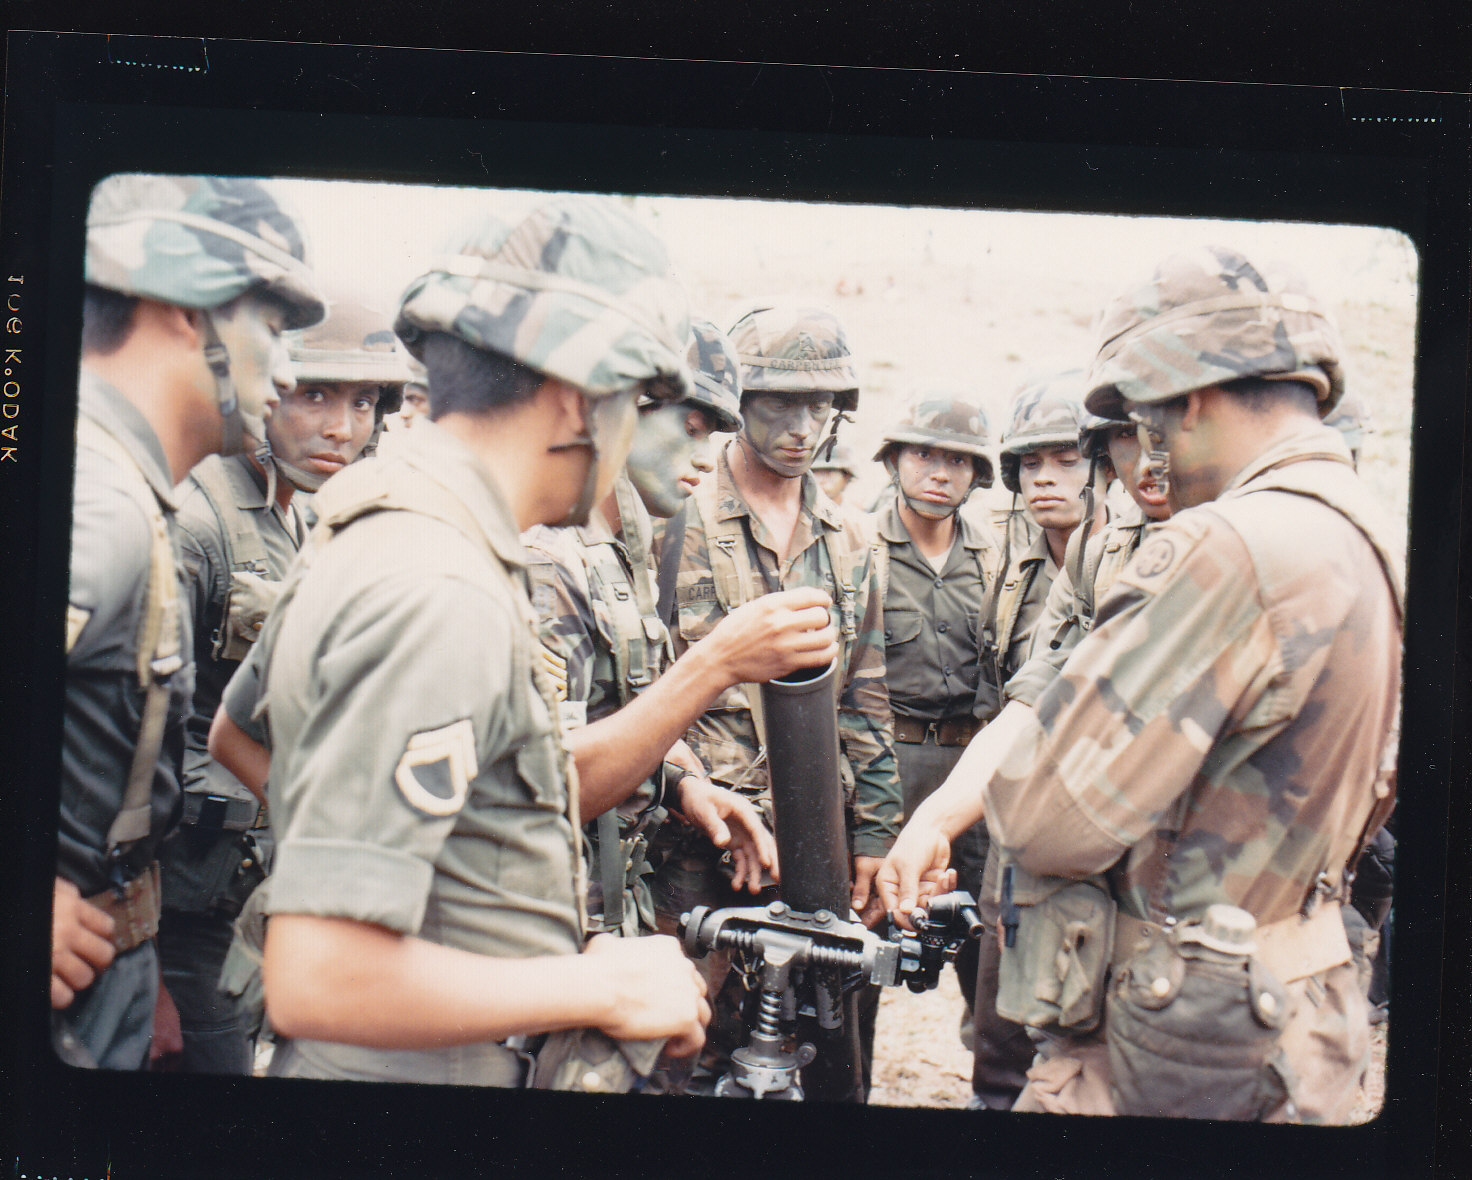 U.S. forces train with Honduran troops in Honduras in 1988. (NARA)